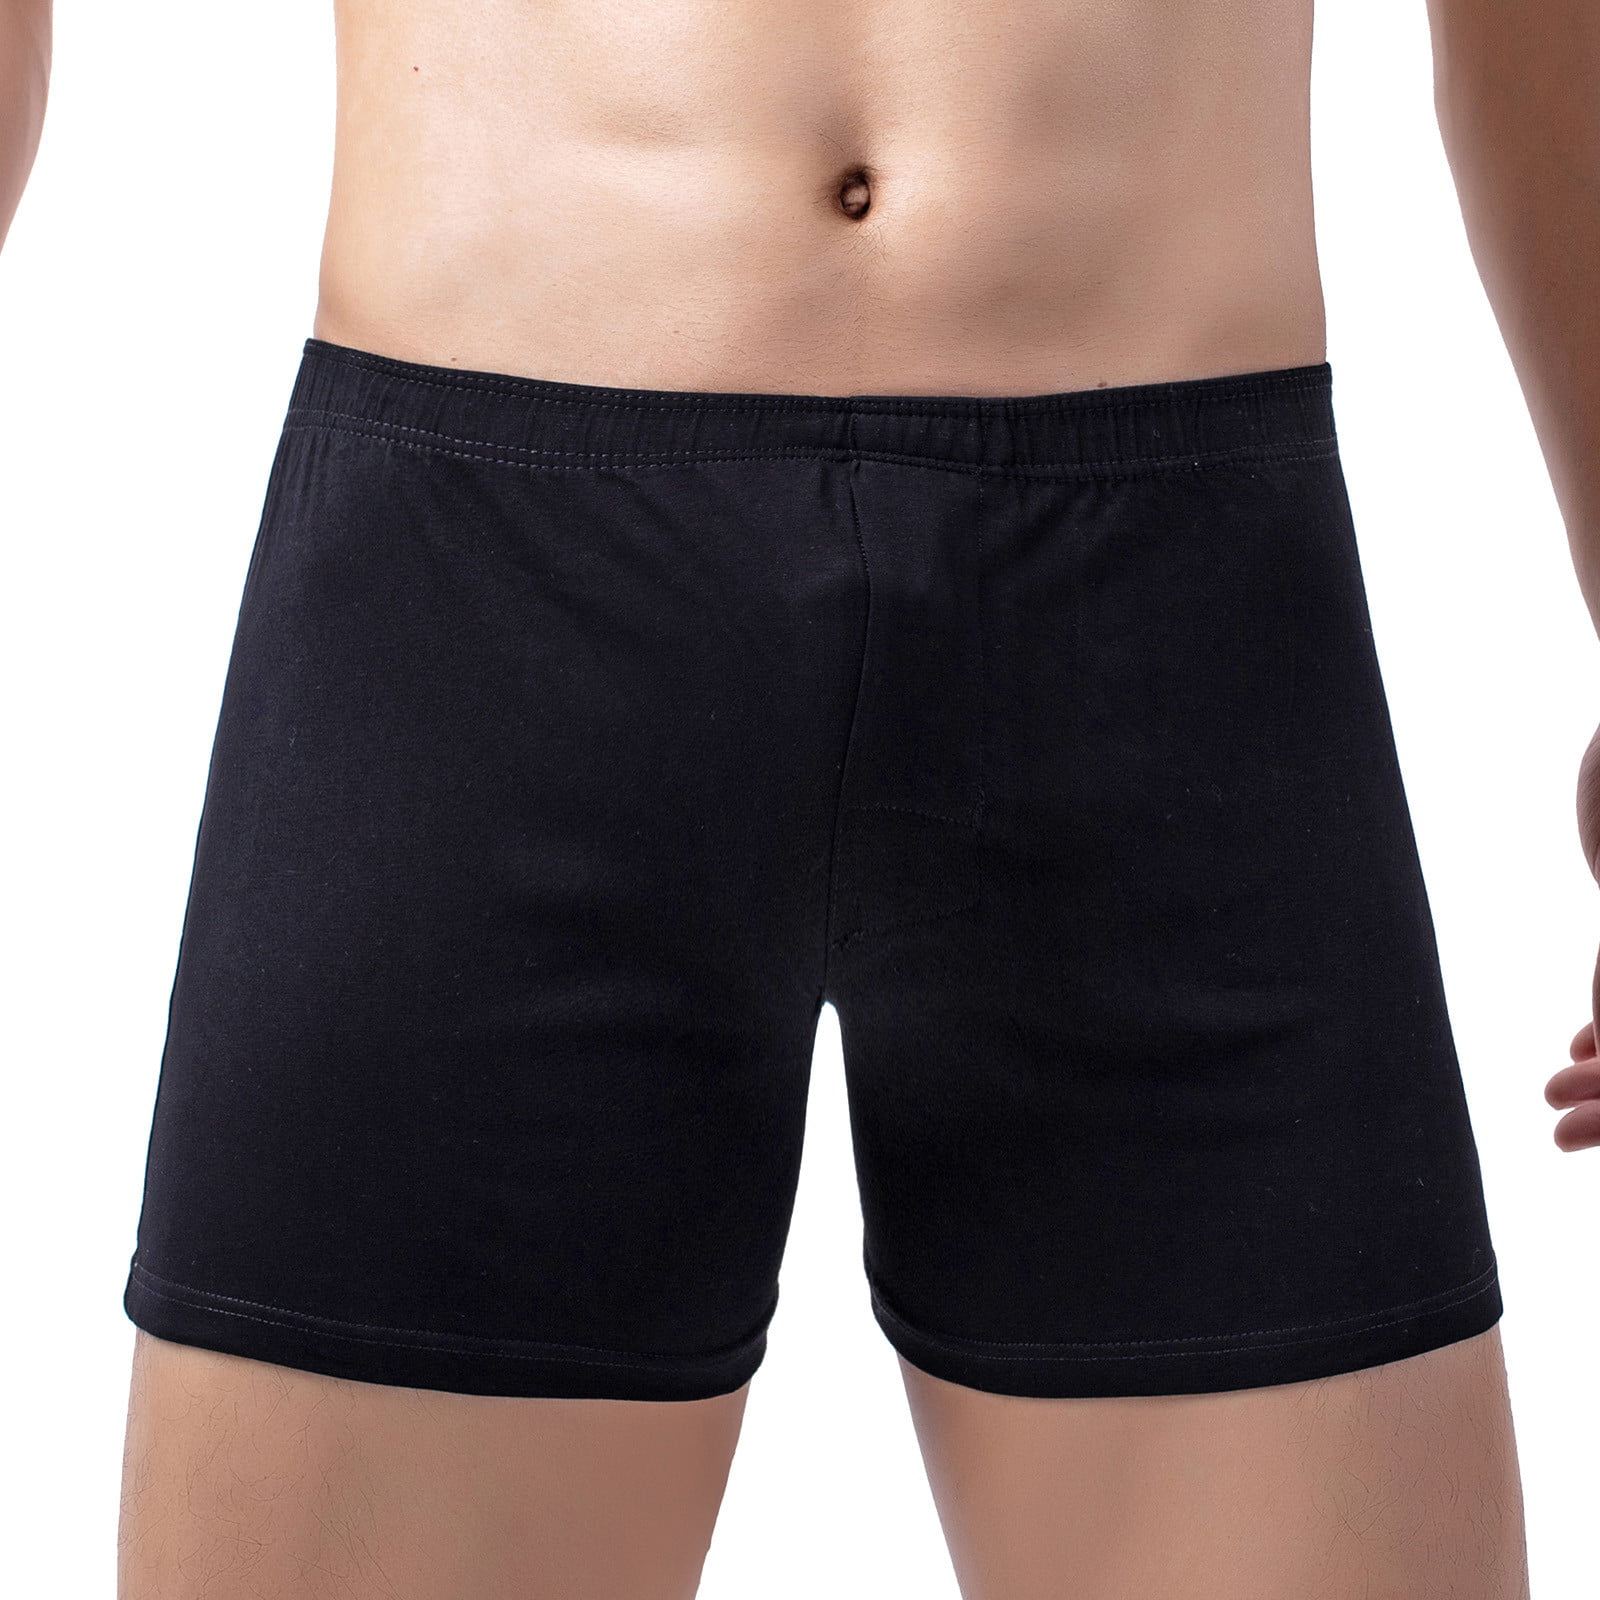 XIULAIQ 5pcs Boxer Shorts Underpants Men's Boxers Panties Men